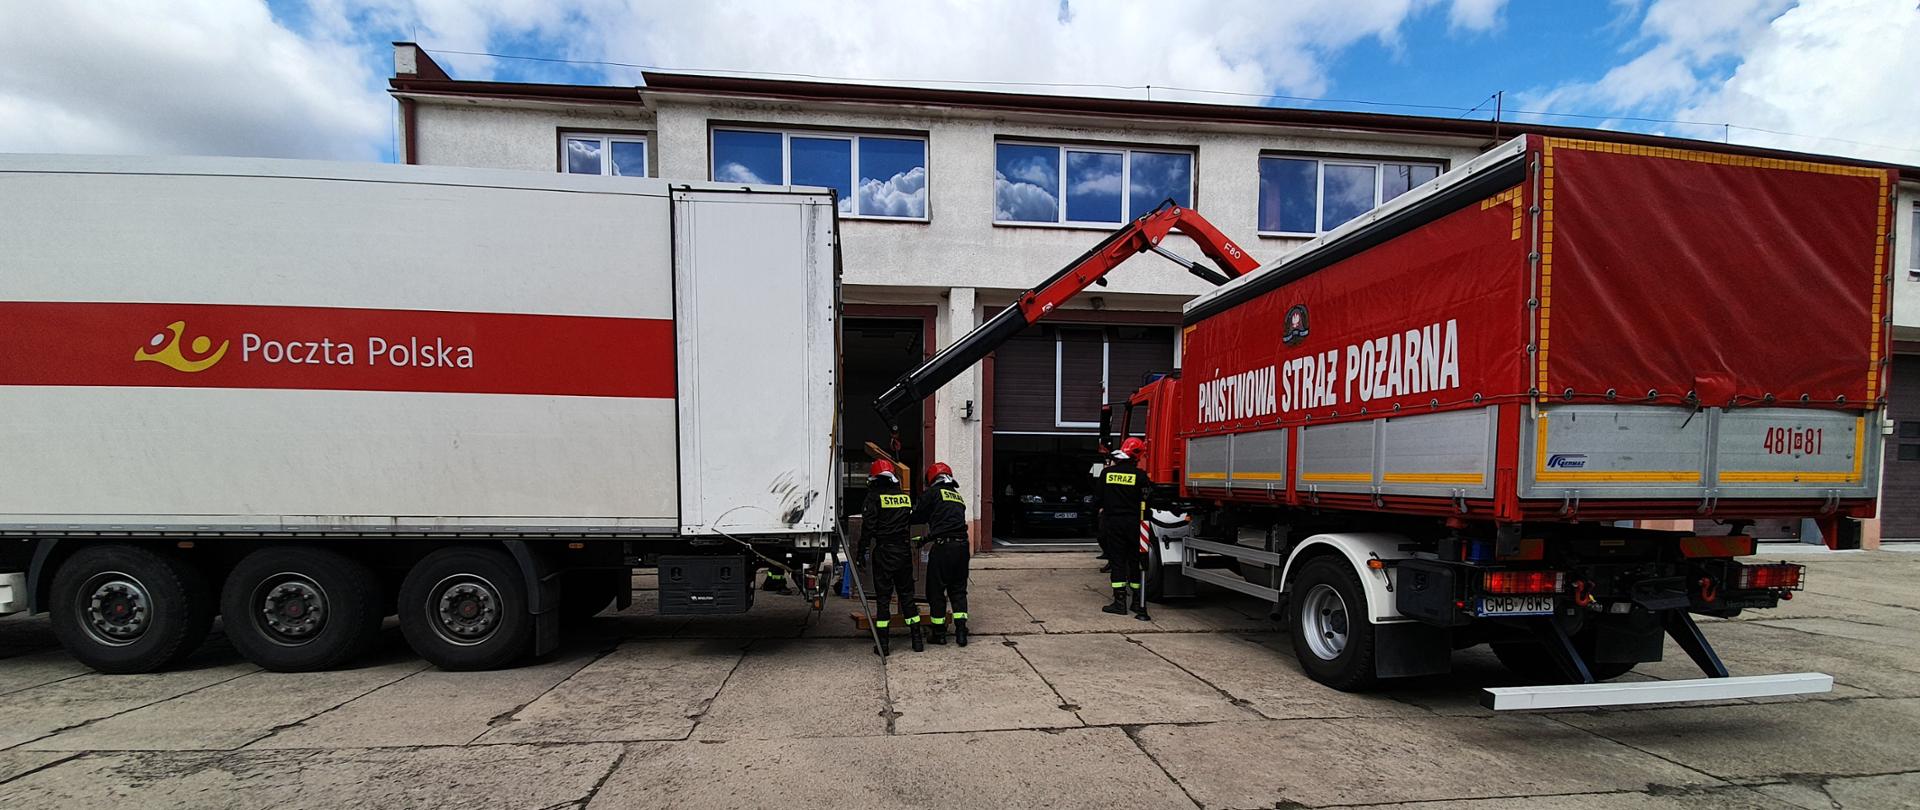 Fotografia przedstawia etap rozładunku samochodu poczty polskiej przez strażaków. Dwa samochody ciężarowe stoją obok siebie przed budynkiem Komendy Powiatowej Państwowej Straży Pożarnej w Malborku.